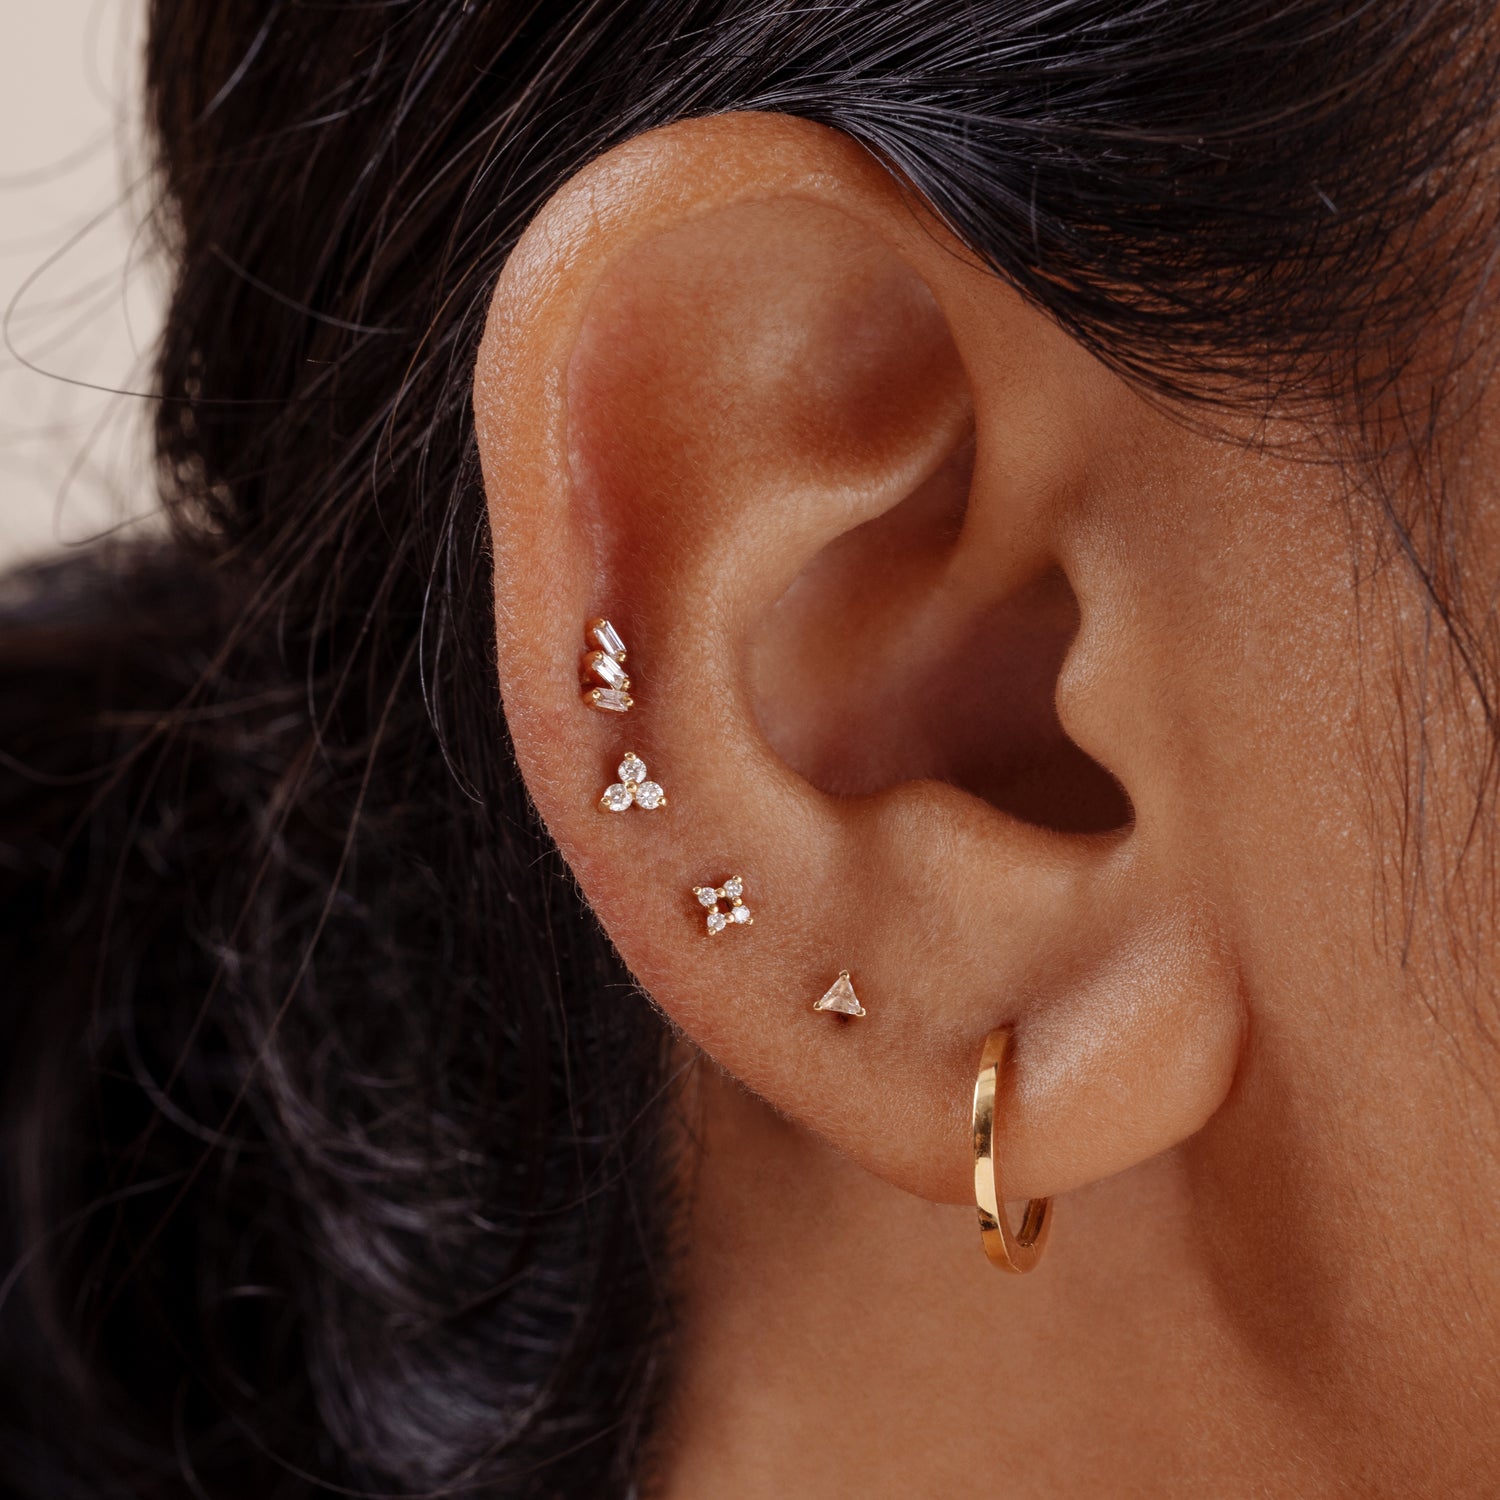 J&CO Jewellery 14K Solid Gold Triple Diamond Threaded Labret Earring Right